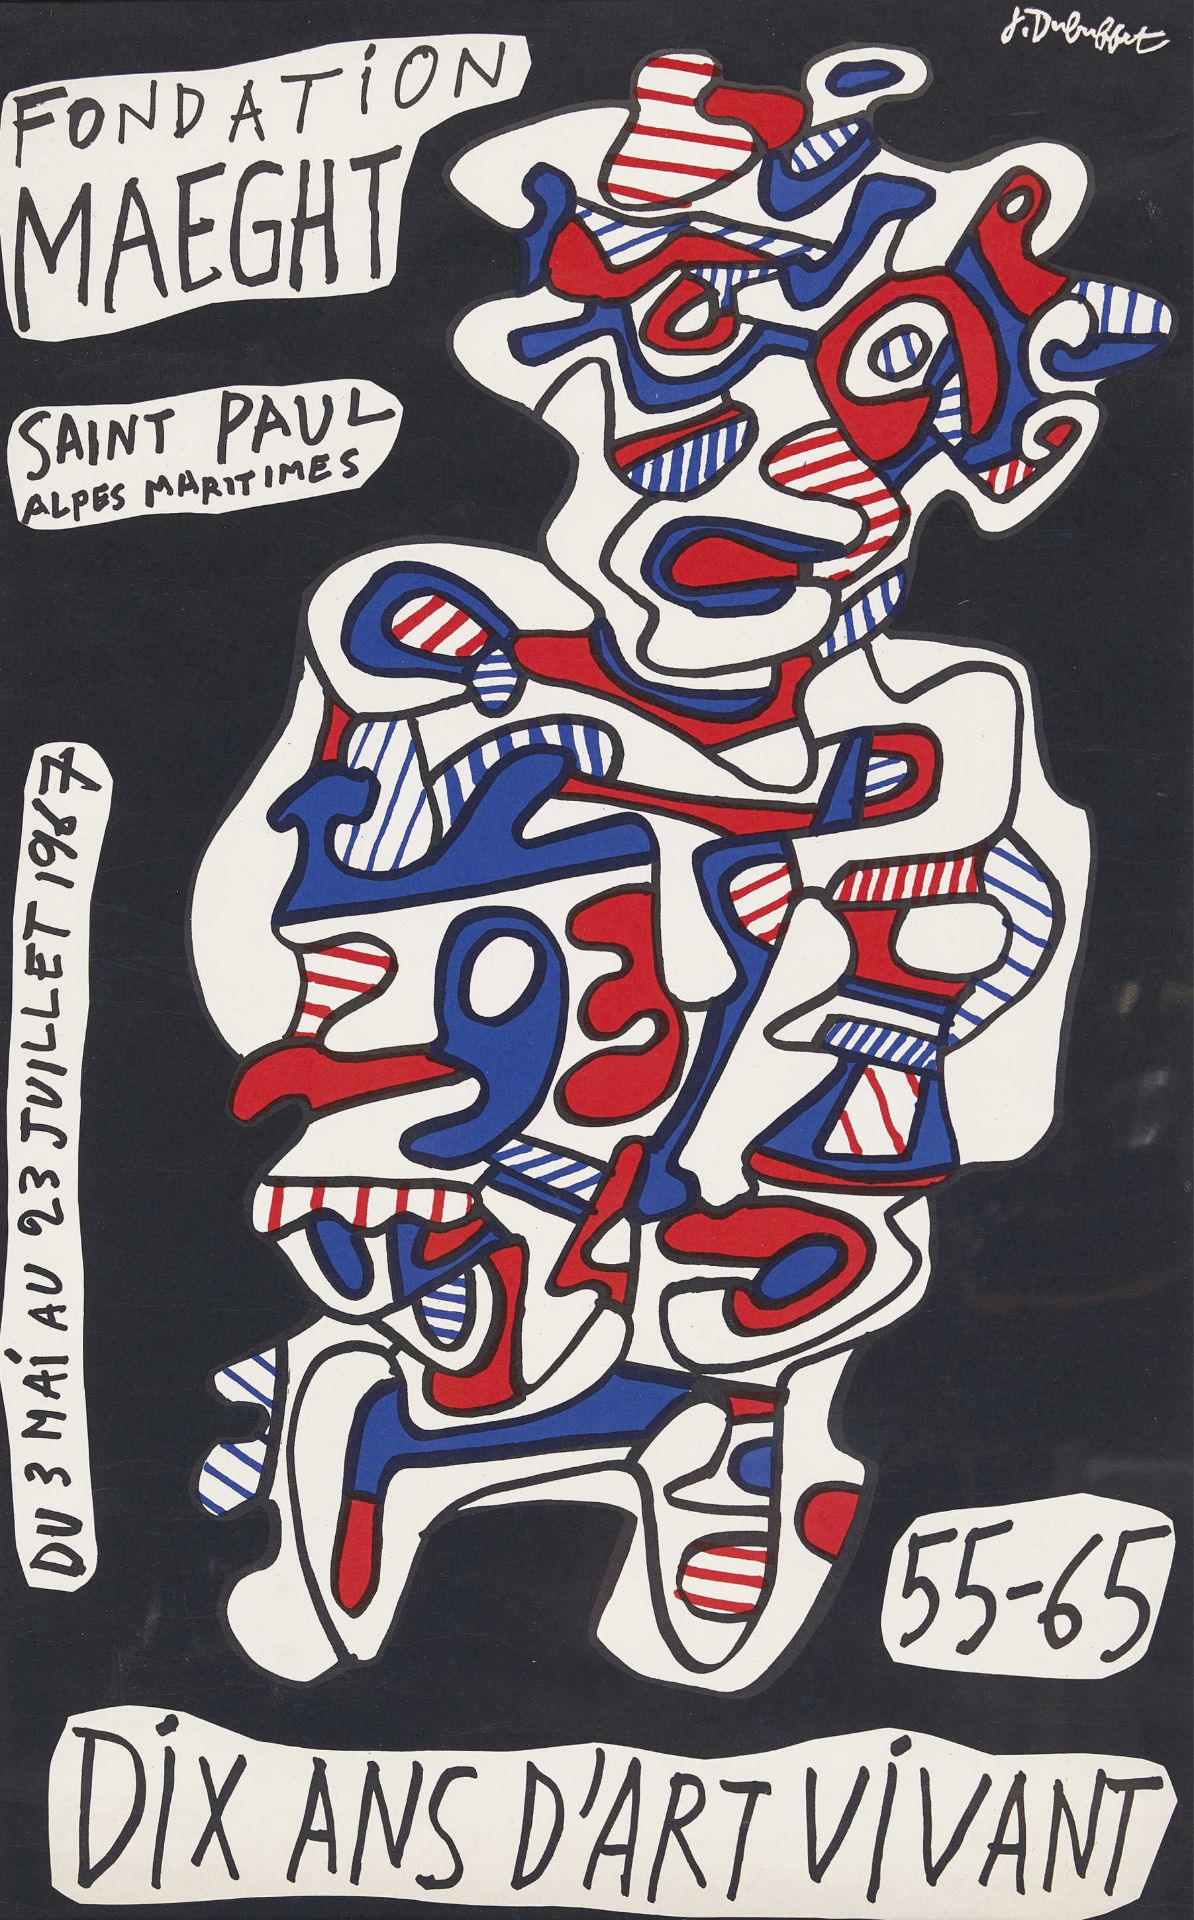 DUBUFFET, JEAN: "Fondation Maeght Saint Paul du 3 Mai au 23 Juillet 1967".